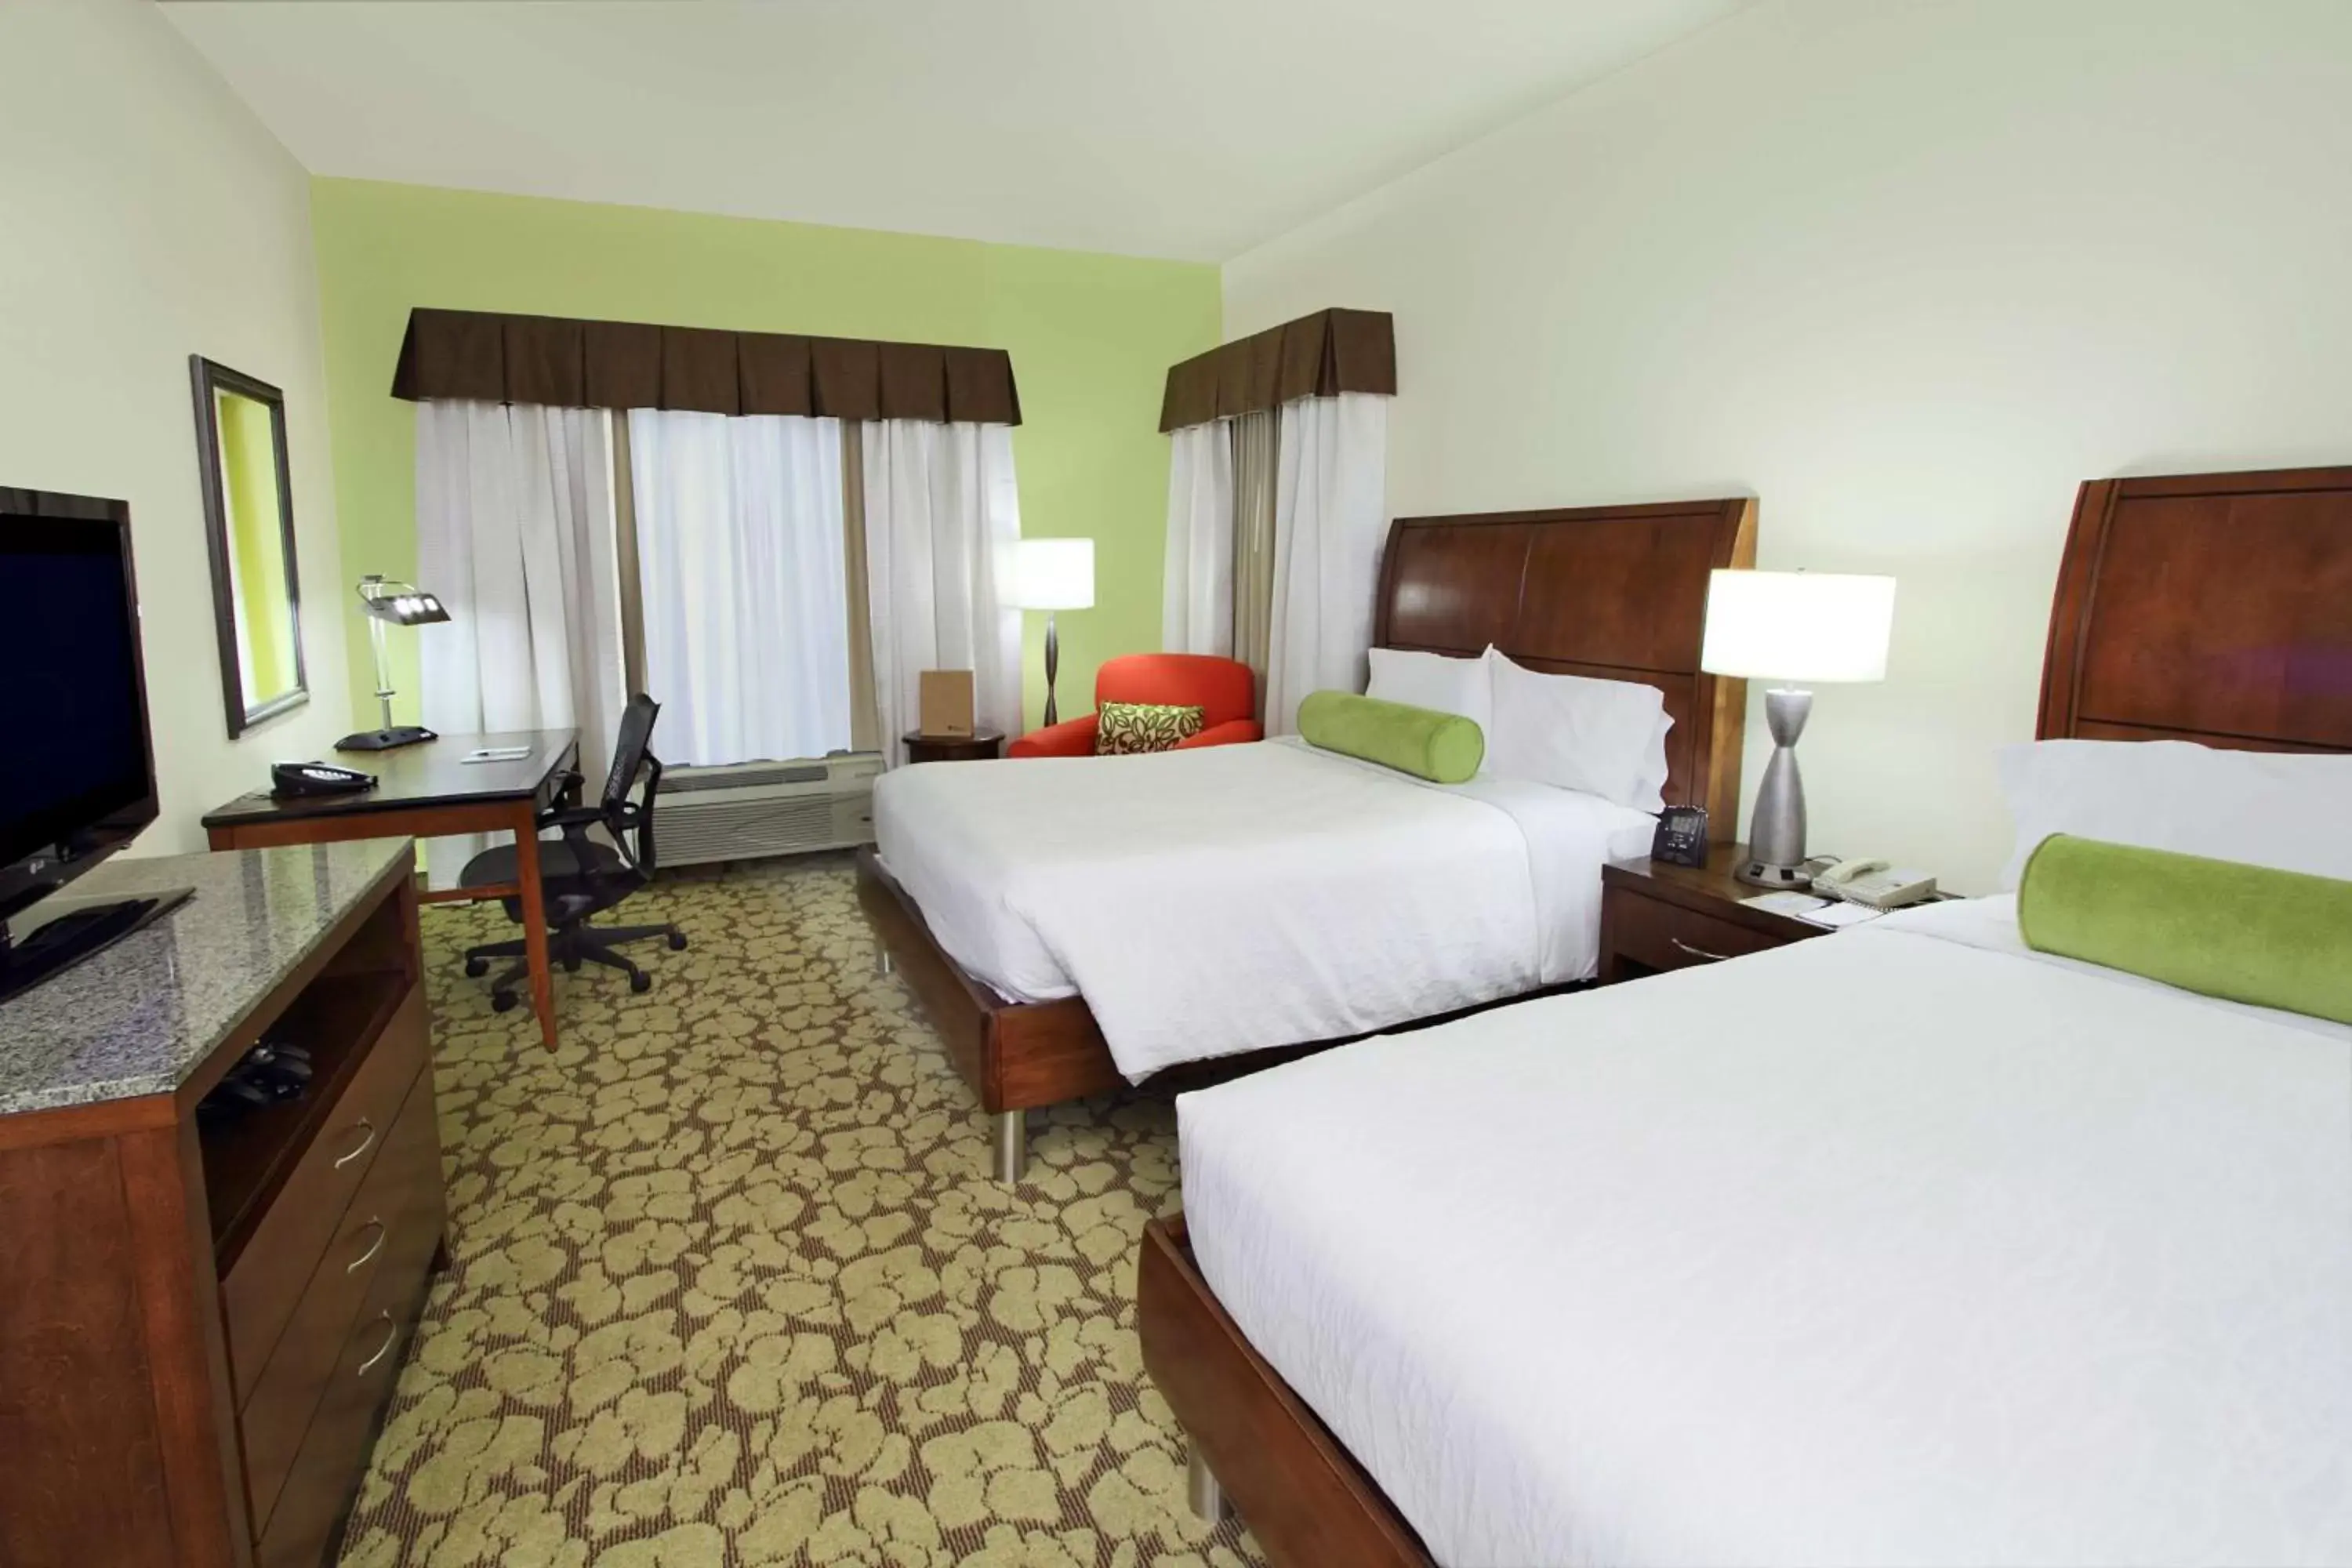 Queen Room in Hilton Garden Inn Calabasas